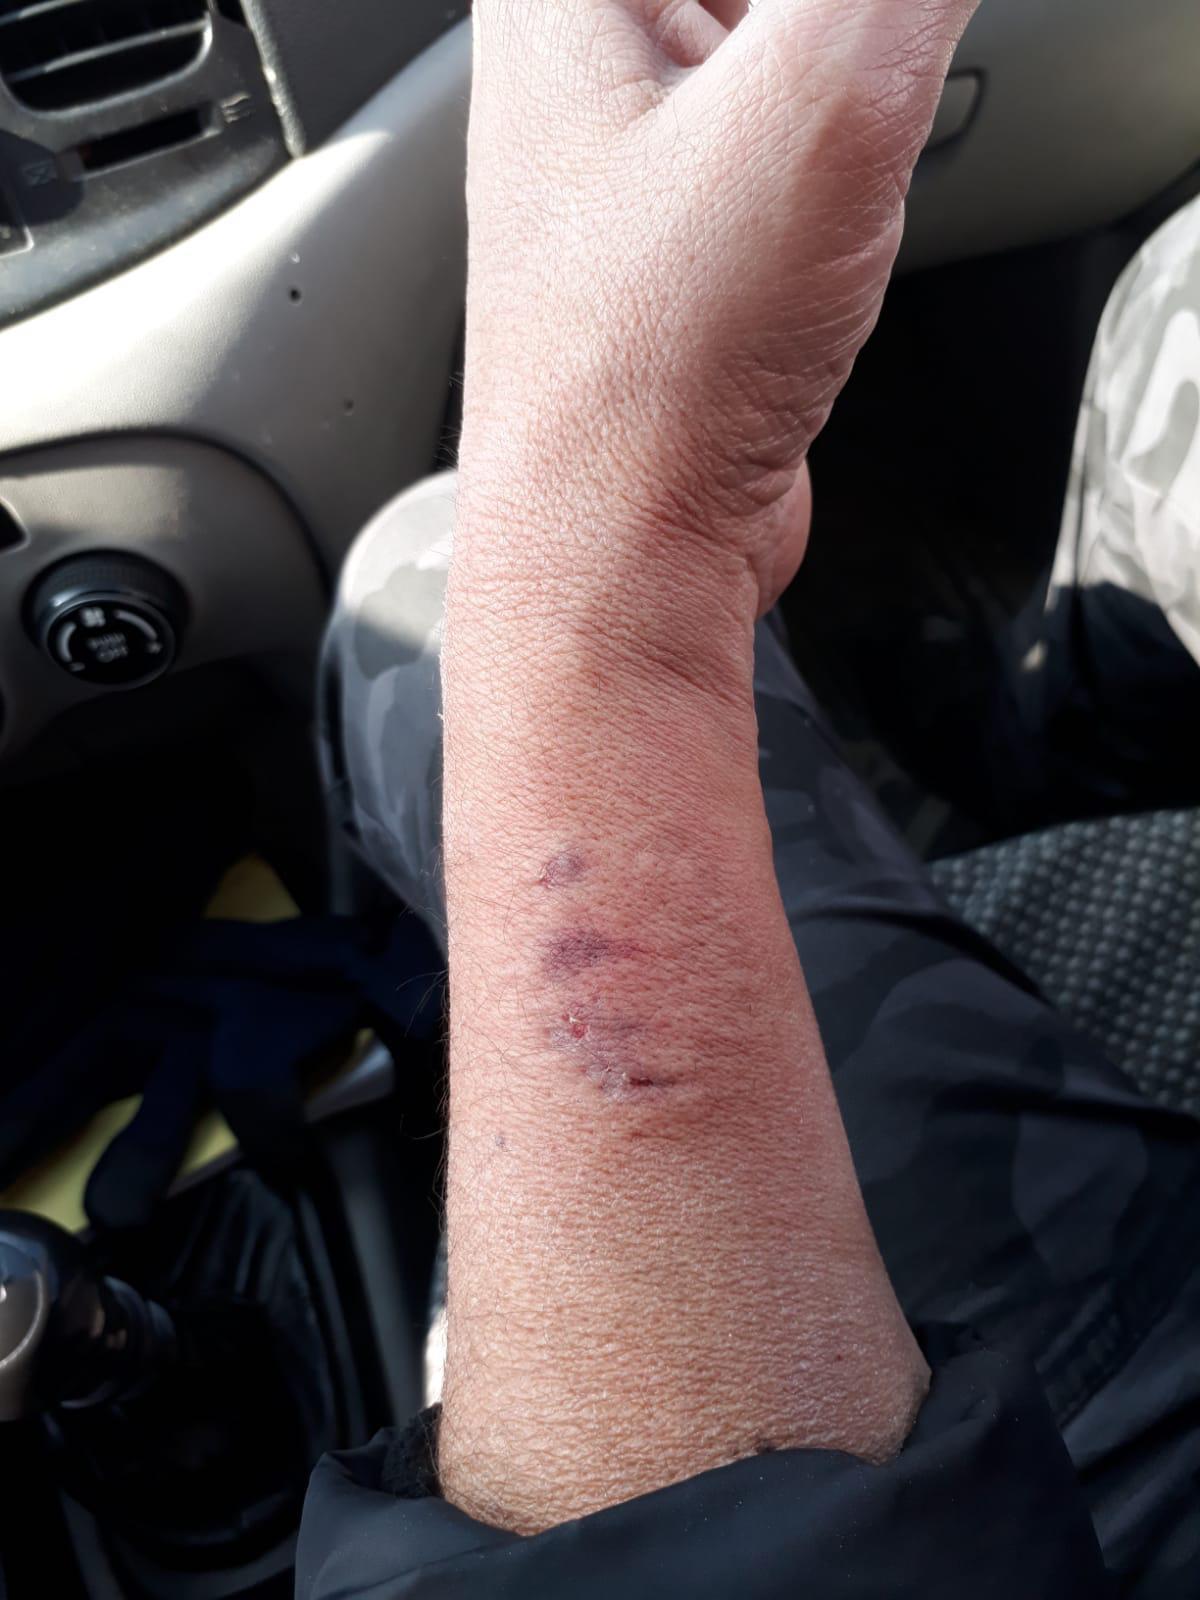 HDPli vekil polis memurunun kolunu ısırdı